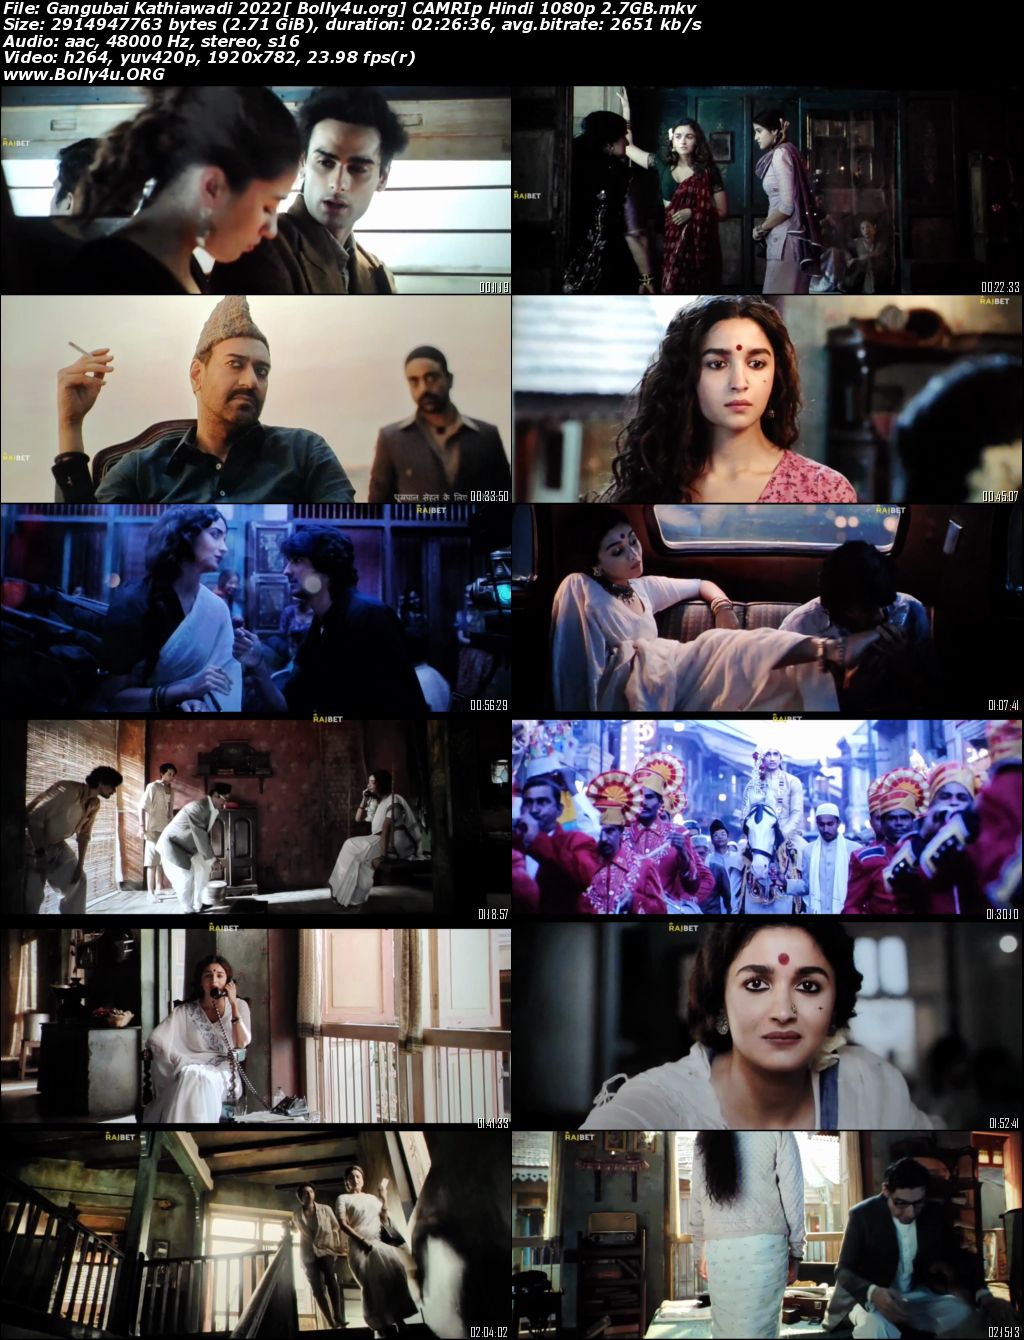 Gangubai Kathiawadi 2022 CAMRip Hindi Movie 720p 480p Download